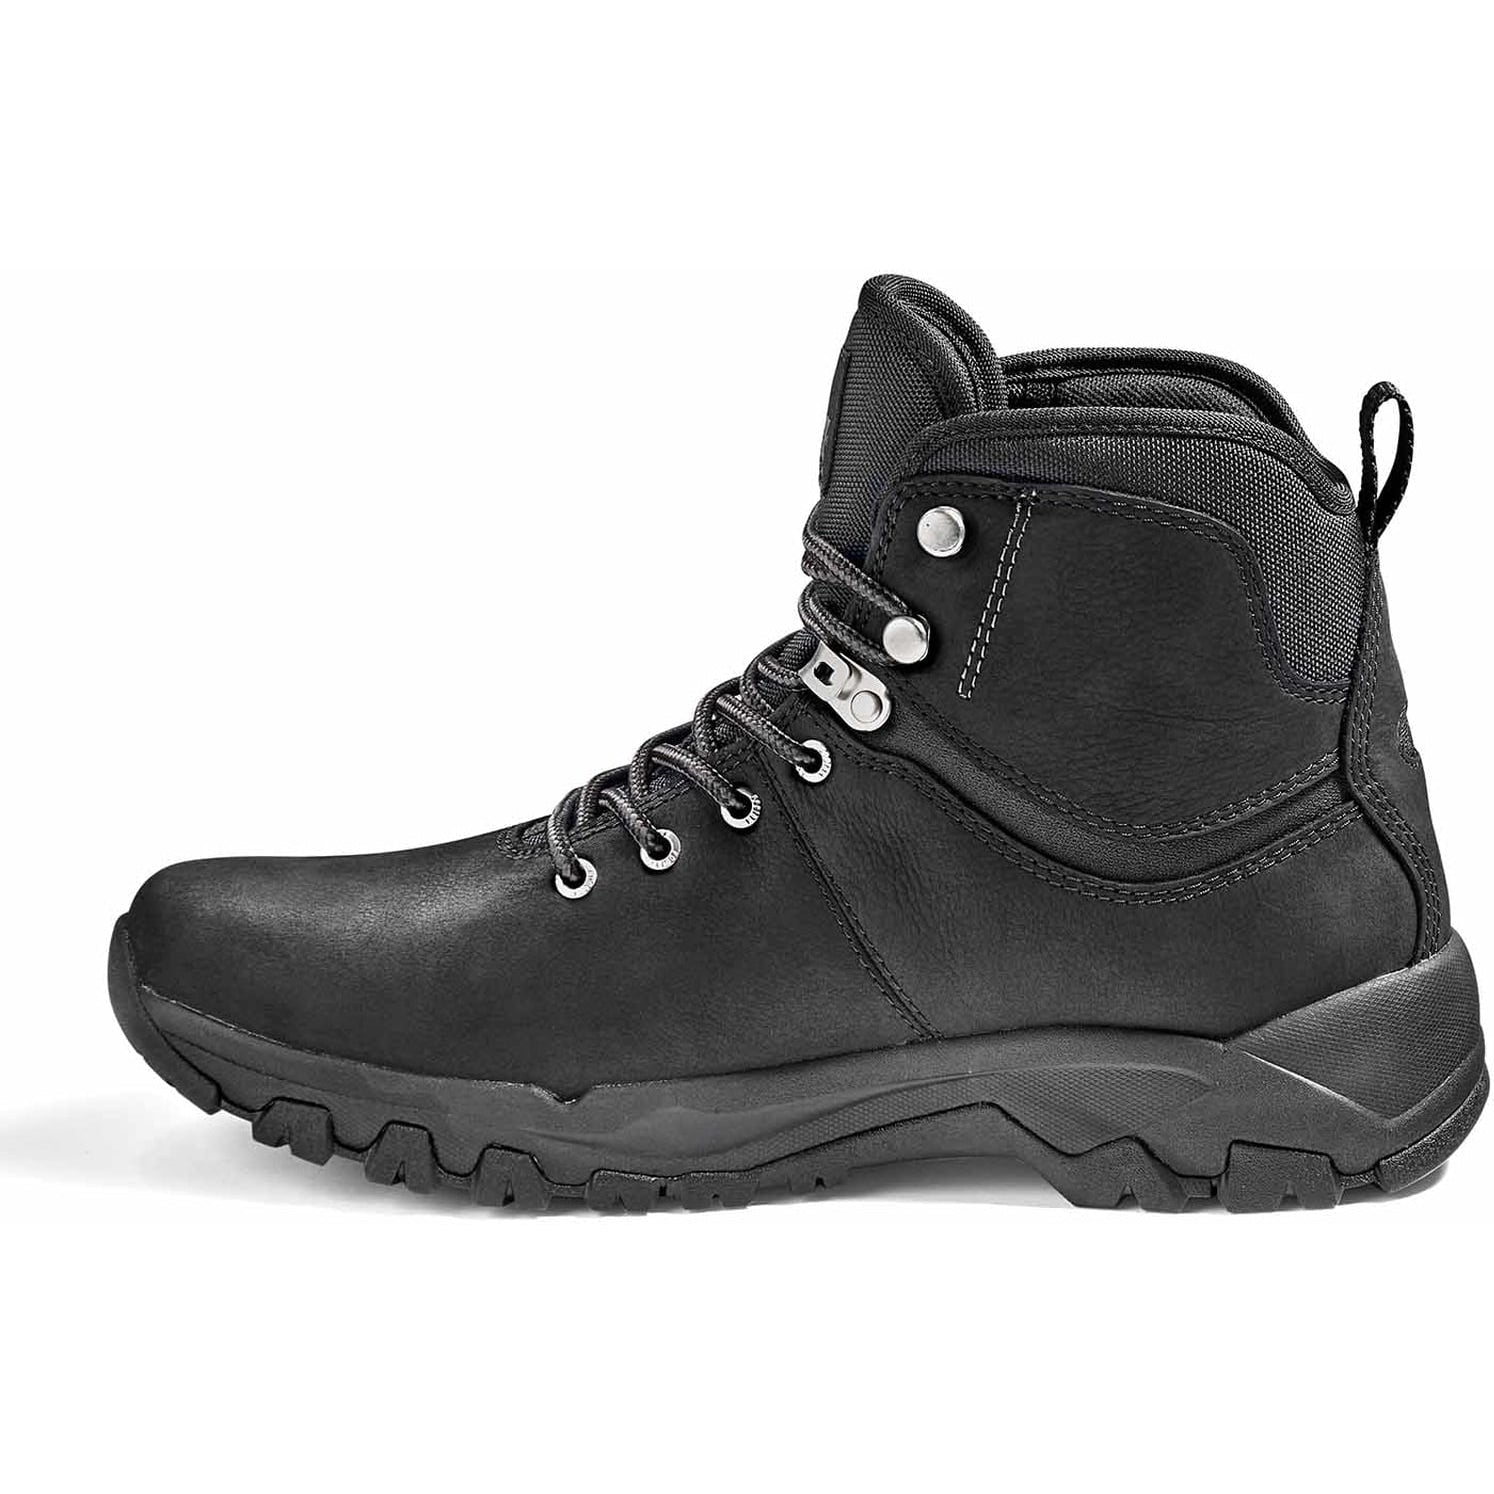 Kodiak Men's Comox Soft Toe Waterproof Lace Up Outdoor Boot -Black- 4TE2BK  - Overlook Boots